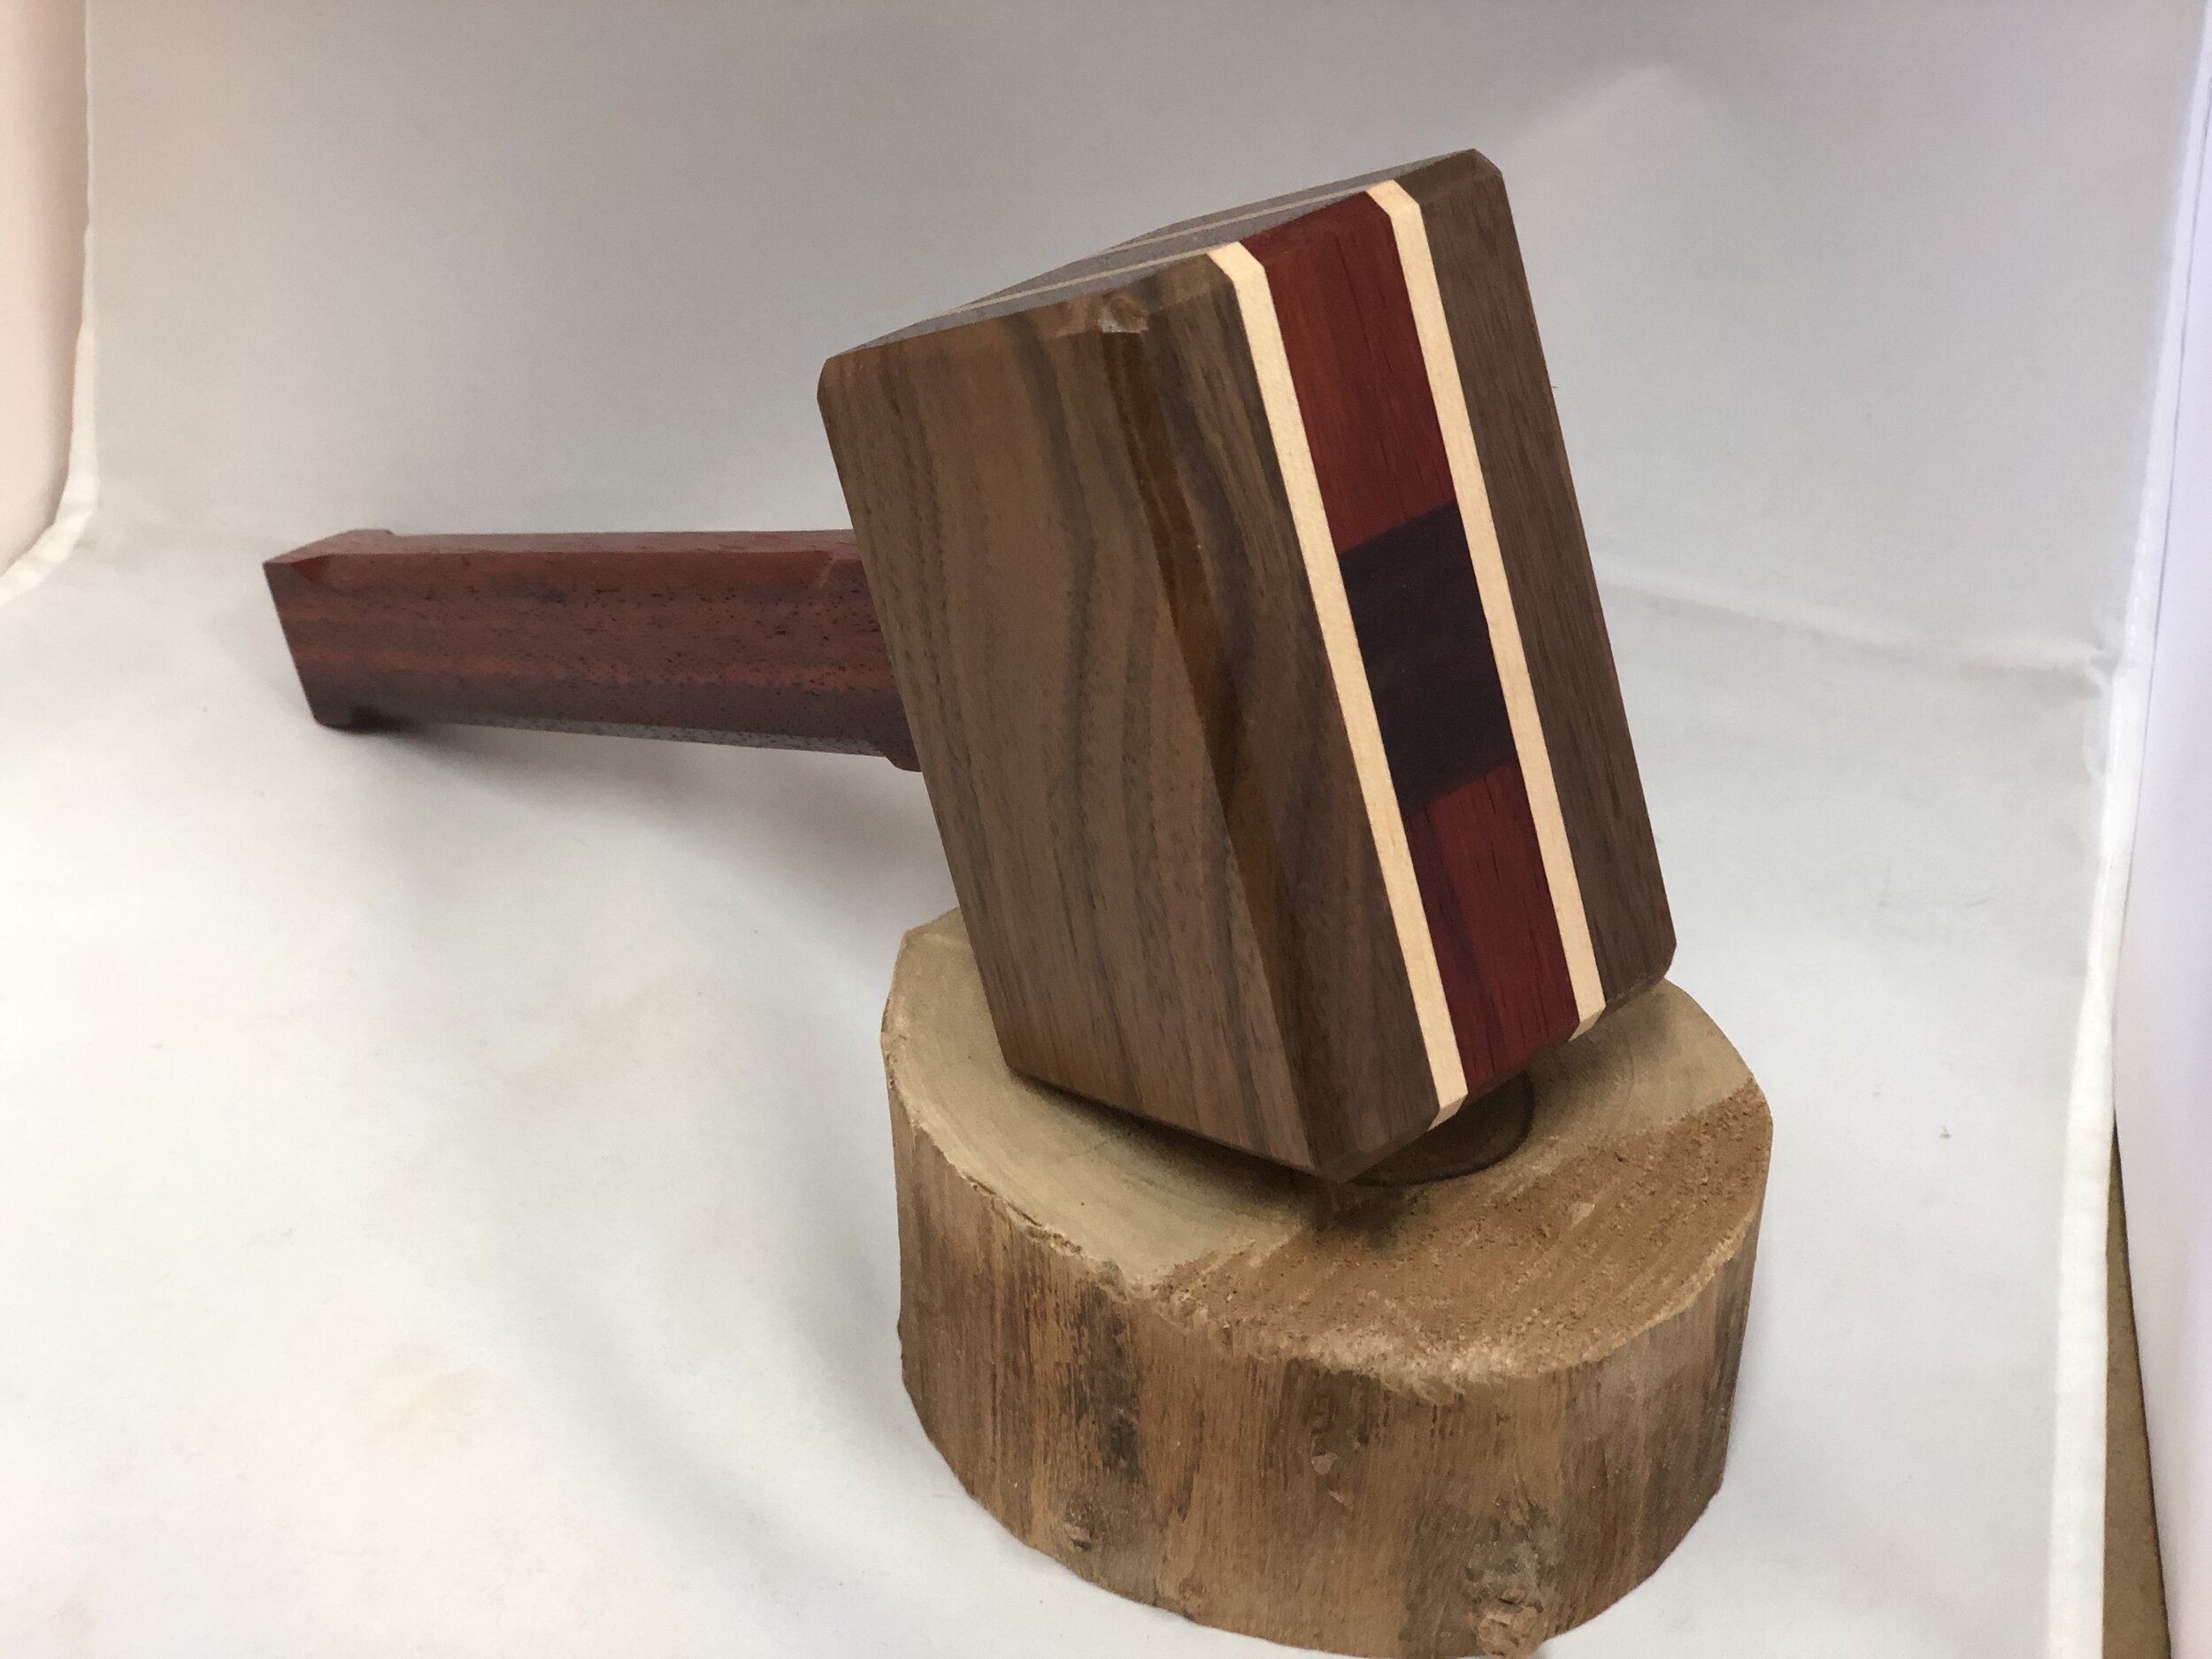 Wood Working Mallet — Humuhumu Woodworking